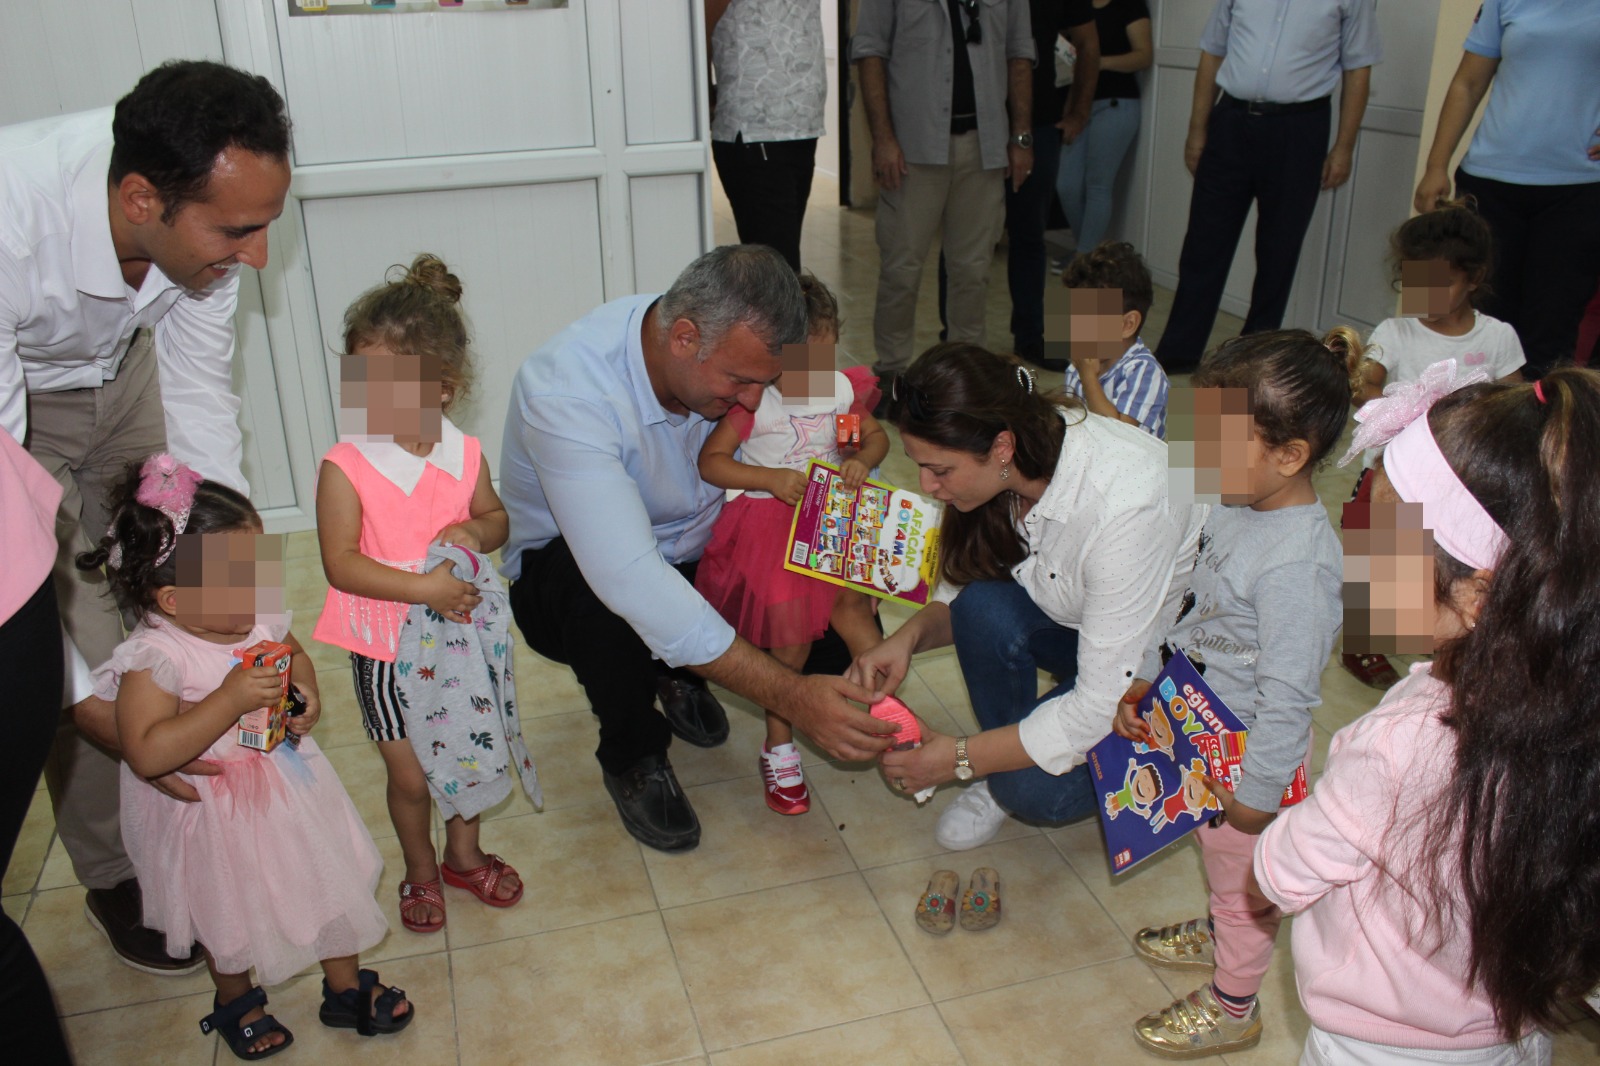 Karataş Belediyesinden Cezaevinde bulunan çocuklara yardım eli uzandı. 